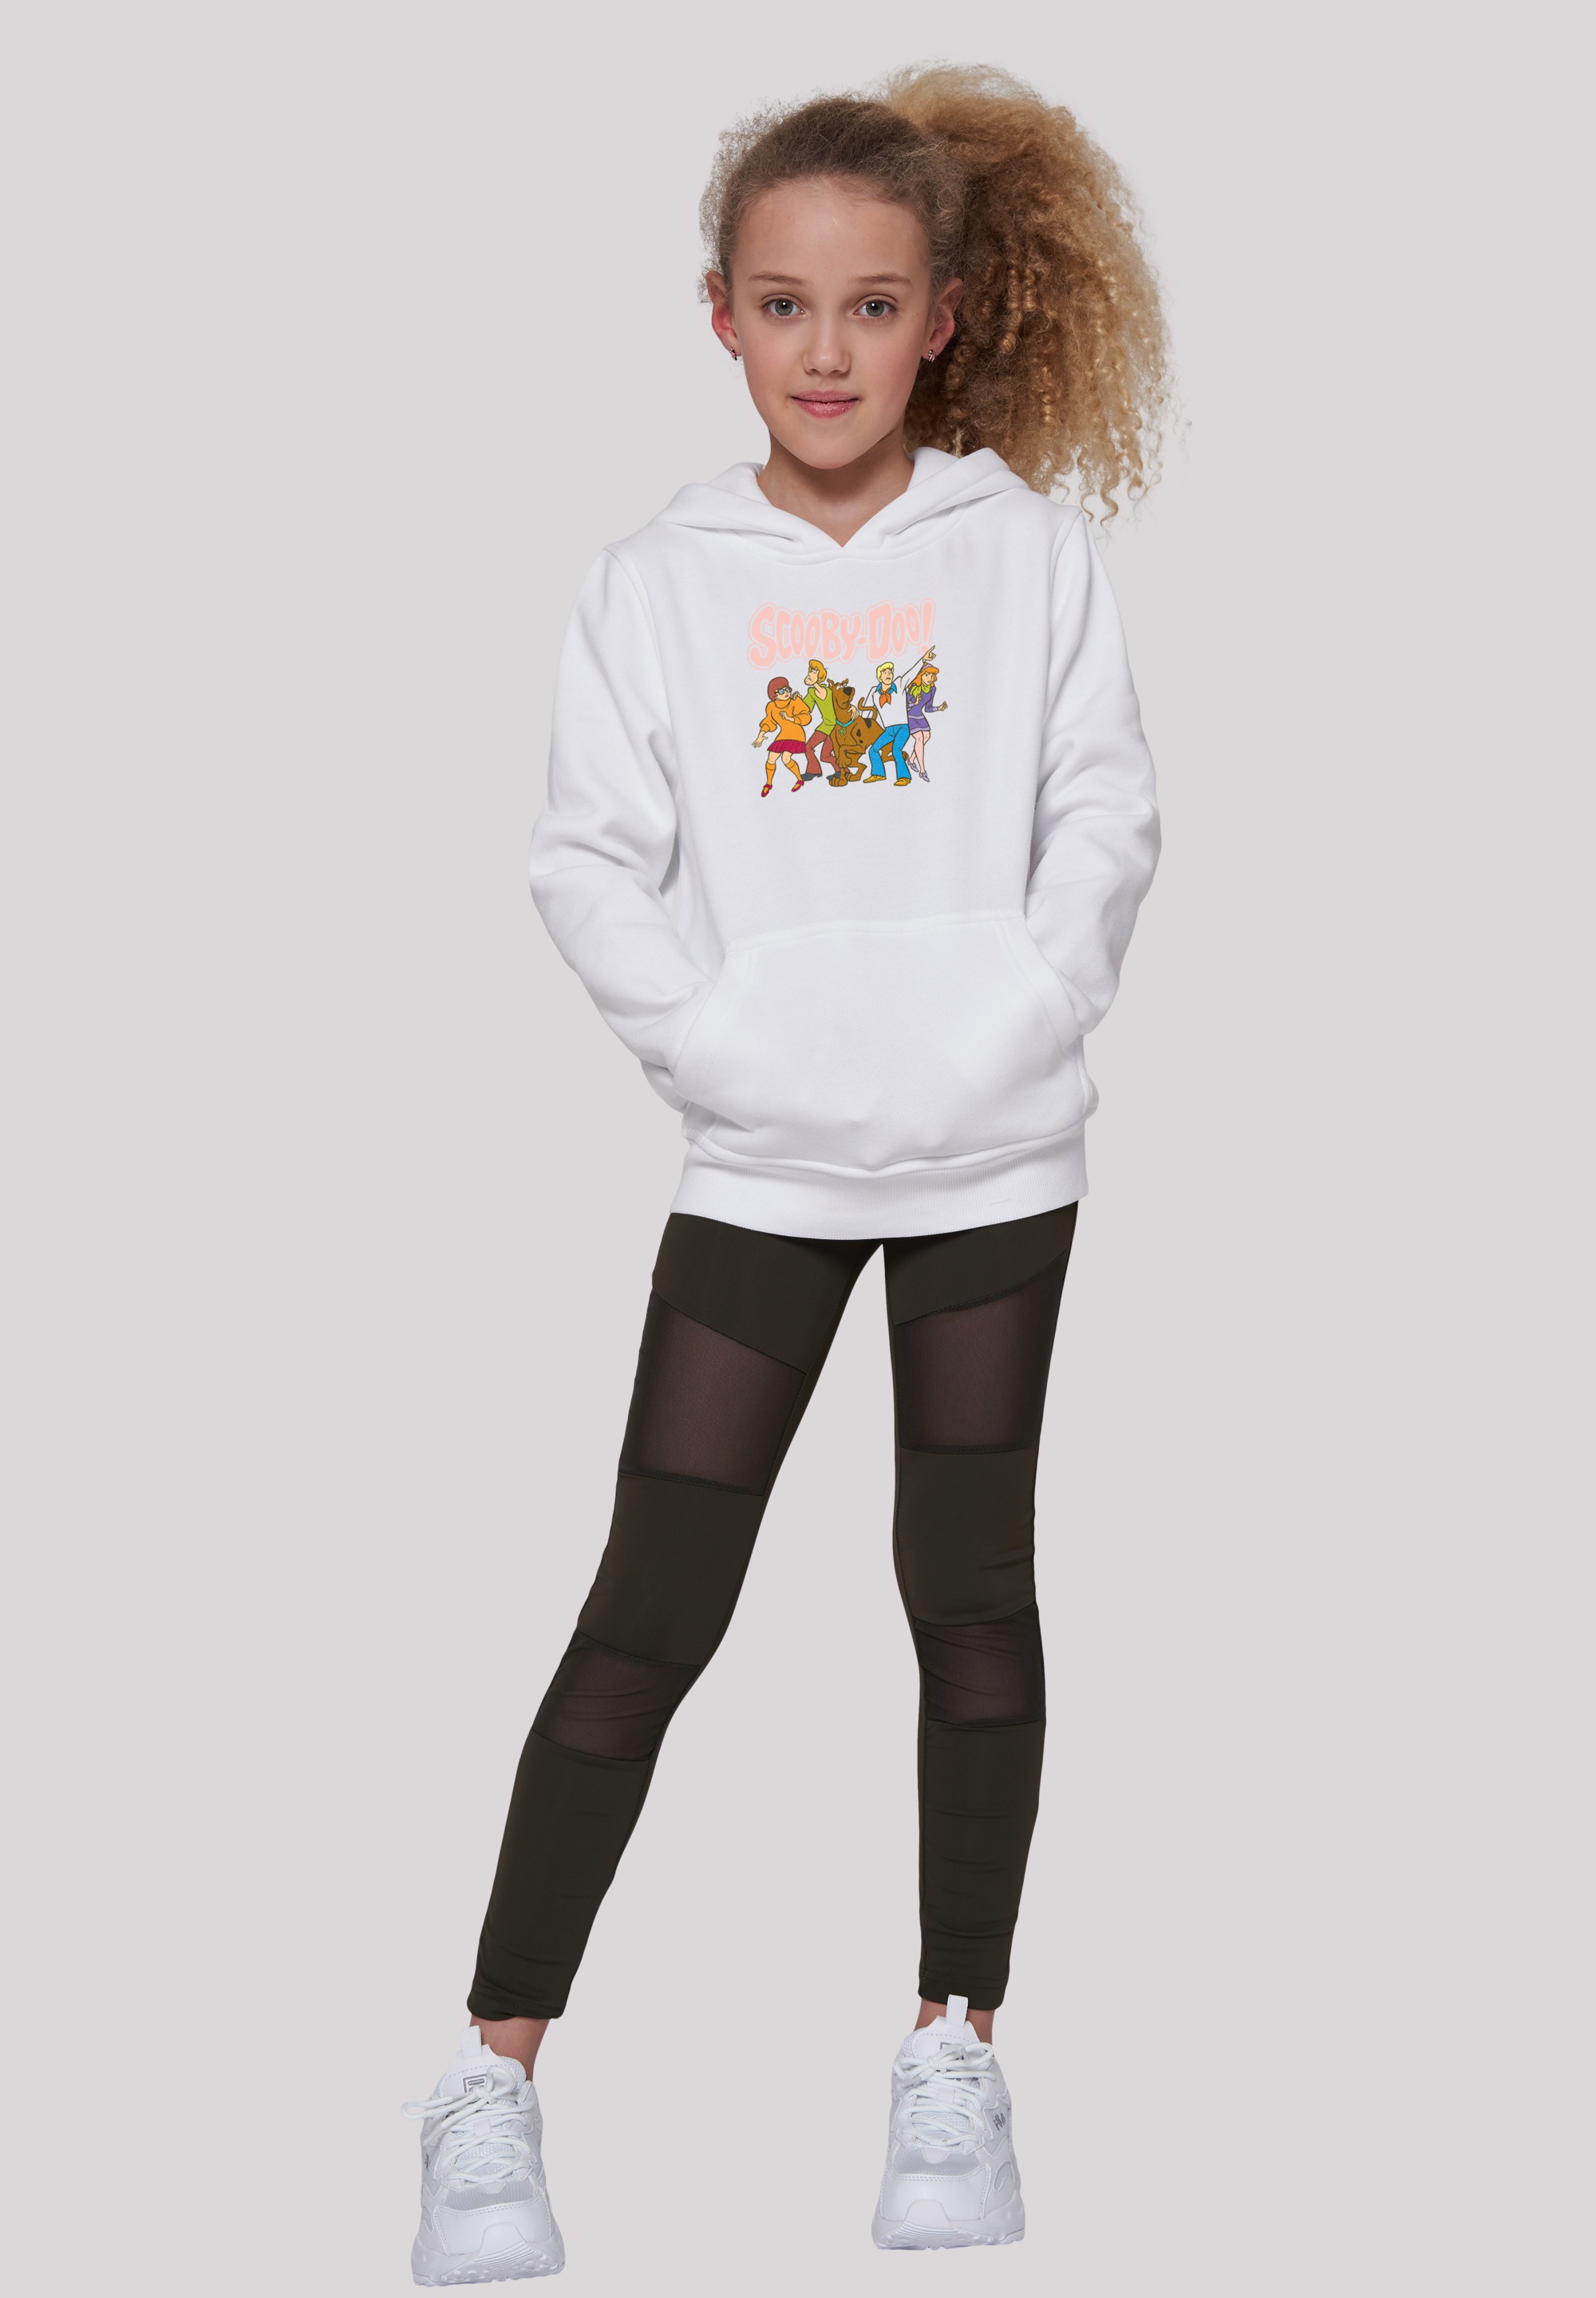 F4NT4STIC Sweatshirt »Scooby Doo Classic Group«, Unisex Kinder,Premium Merch ,Jungen,Mädchen,Bedruckt online kaufen | BAUR